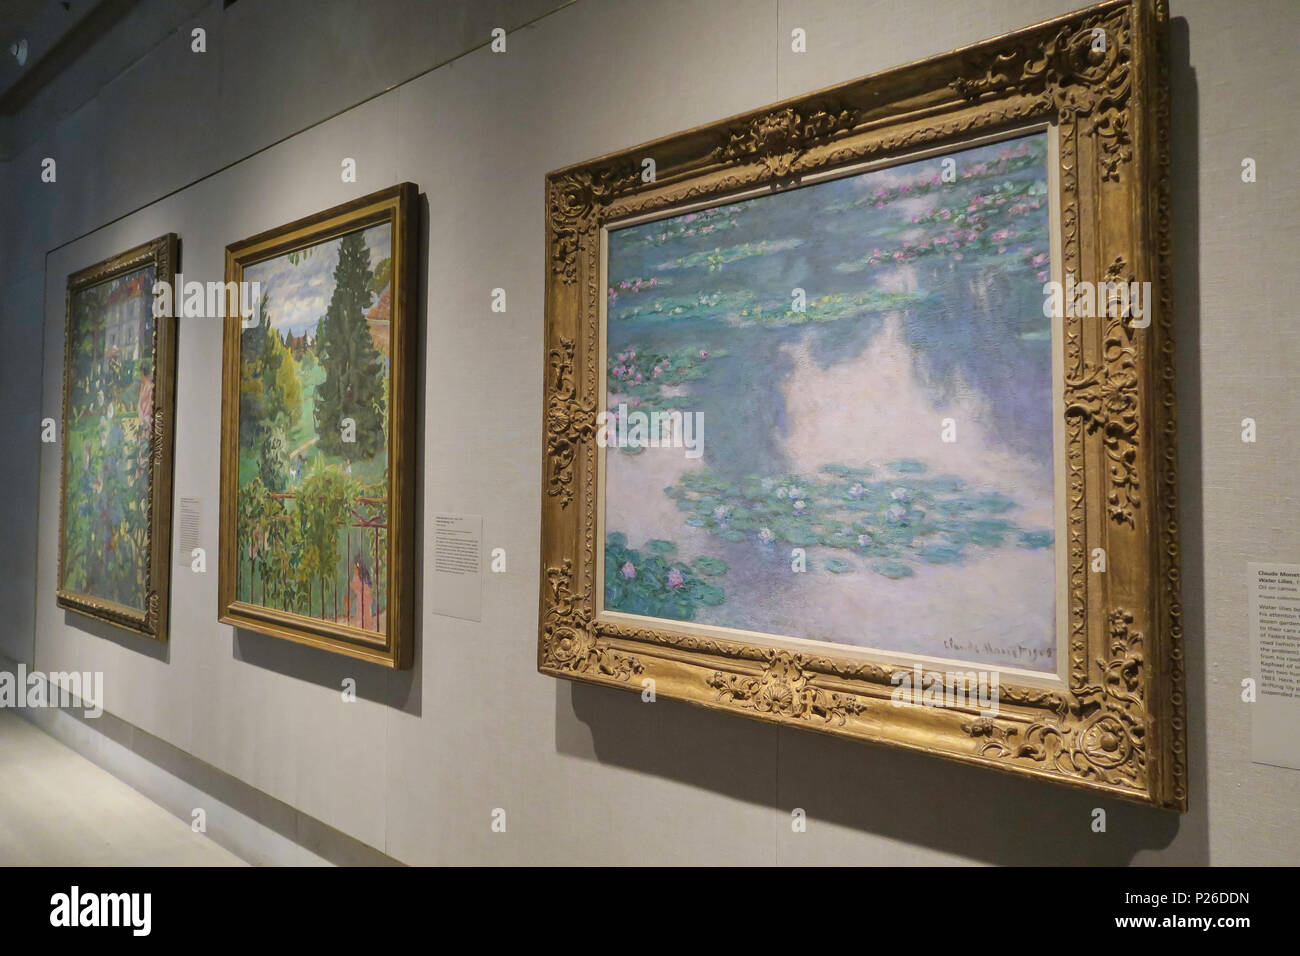 "Los parques públicos, jardines privados: París de Provence", exposición en el Museo Metropolitano de Arte, Nueva York, EE.UU. Foto de stock